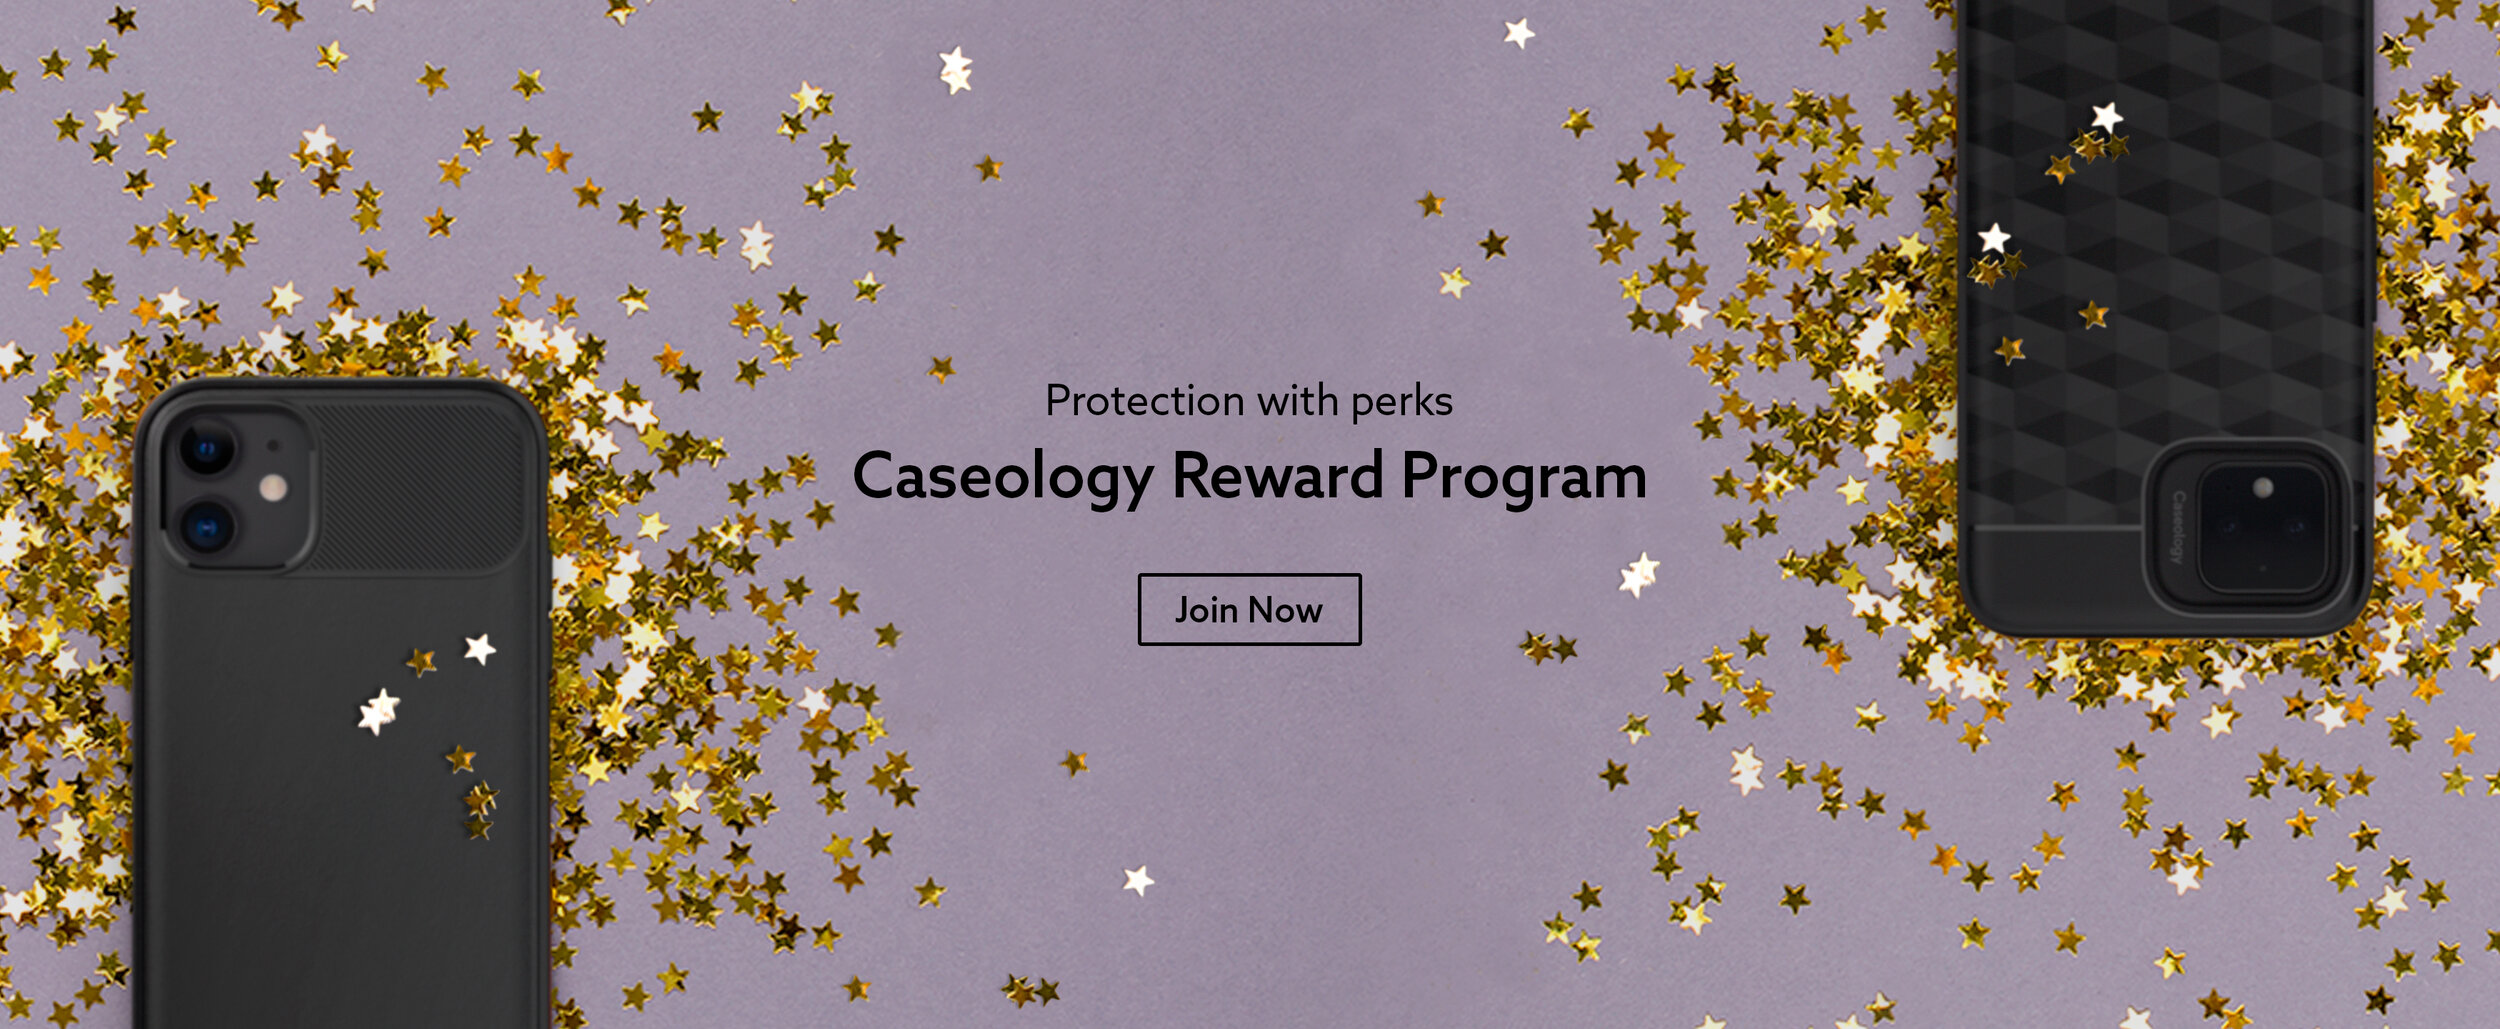 caseology_rewards_landing_page_banner.jpg